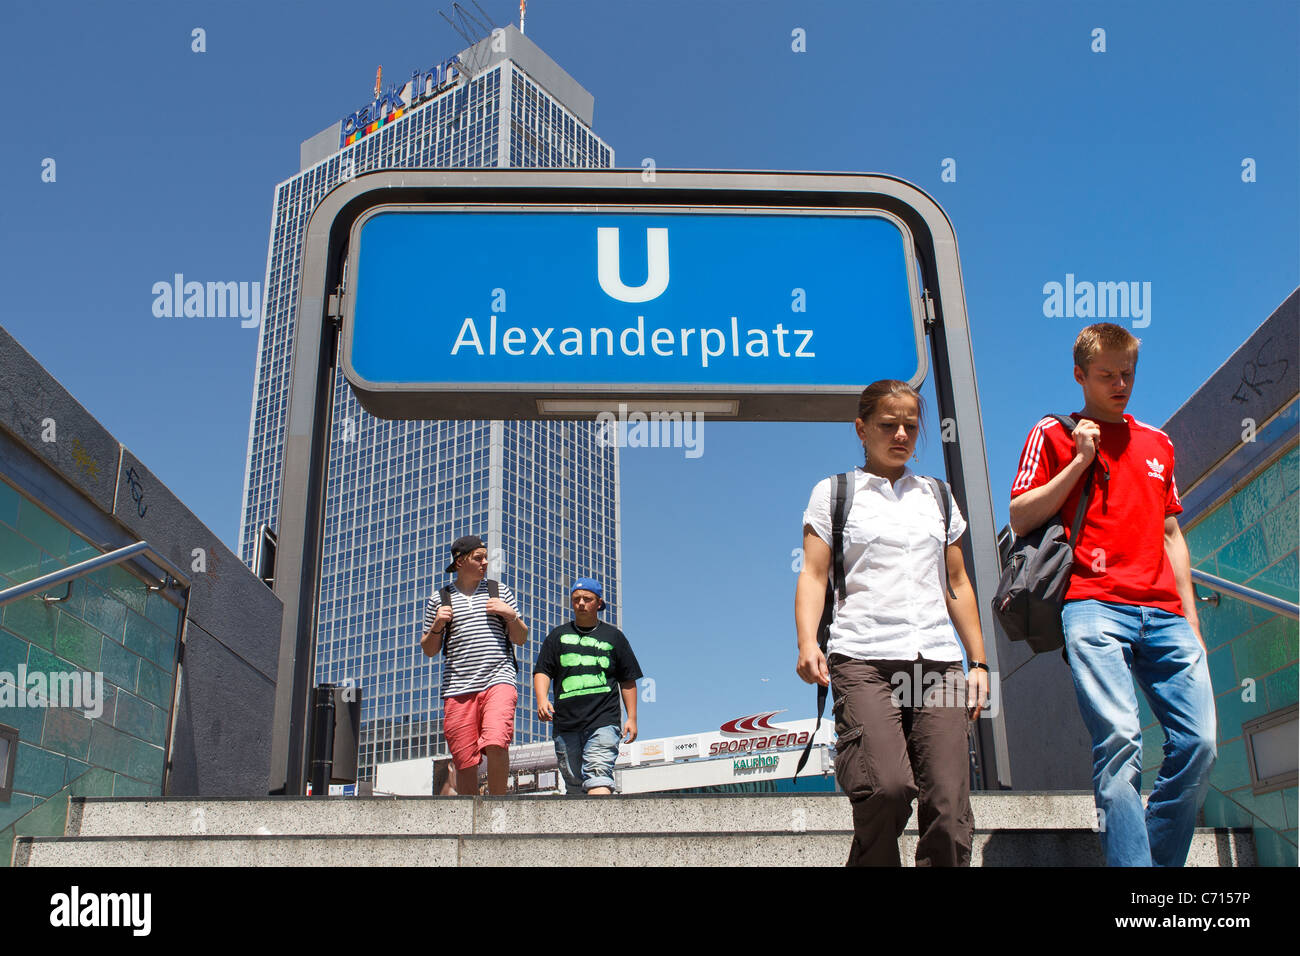 L'Alexanderplatz ubahn entrée signe les jeunes adolescents adolescents u bahn personnes park inn Berlin Allemagne Banque D'Images